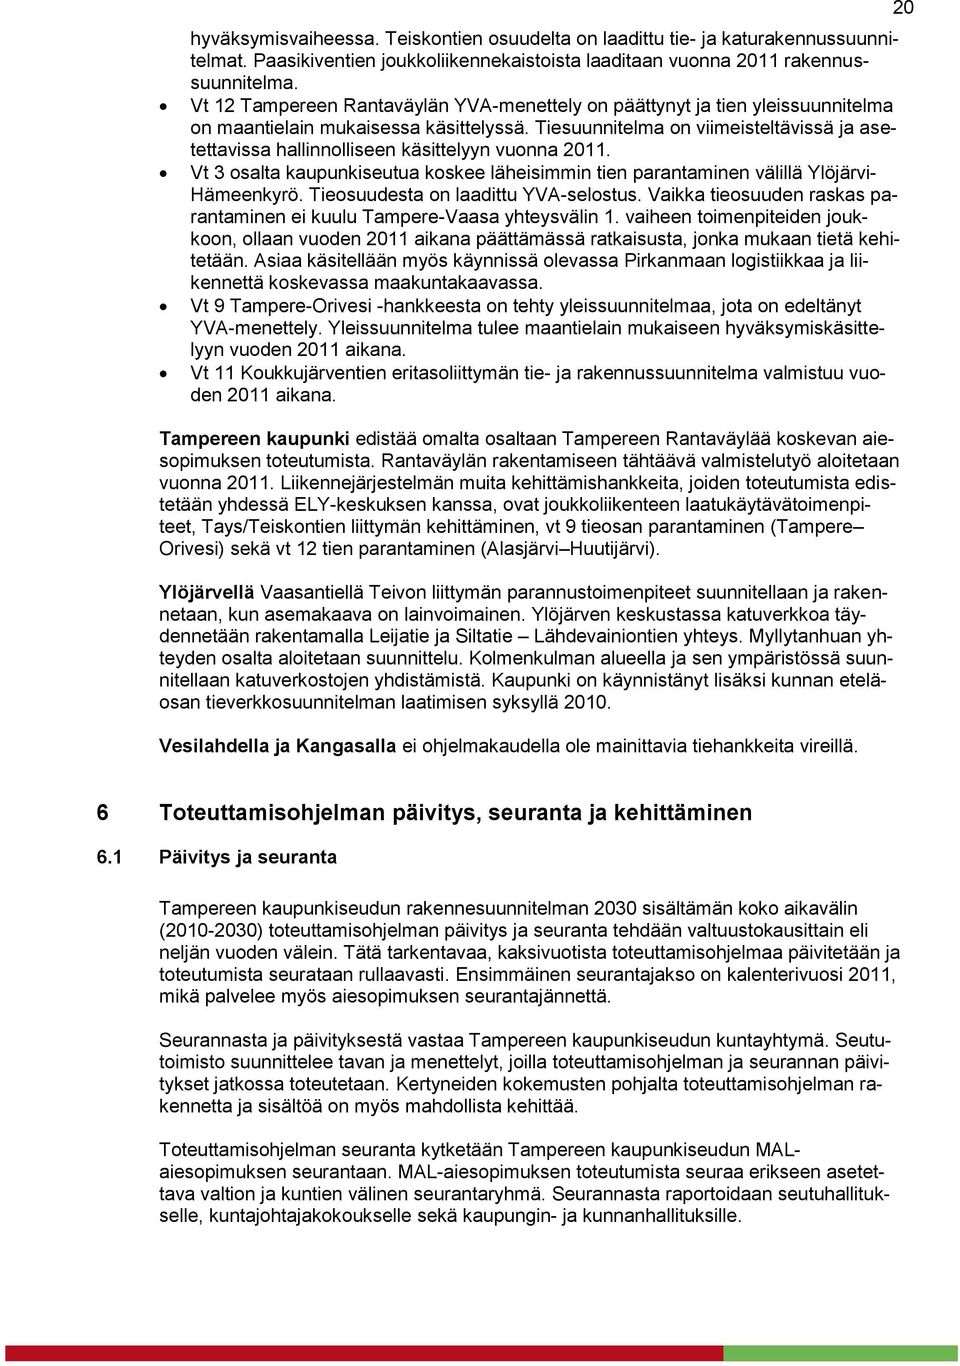 Tiesuunnitelma on viimeisteltävissä ja asetettavissa hallinnolliseen käsittelyyn vuonna 2011. Vt 3 osalta kaupunkiseutua koskee läheisimmin tien parantaminen välillä Ylöjärvi- Hämeenkyrö.